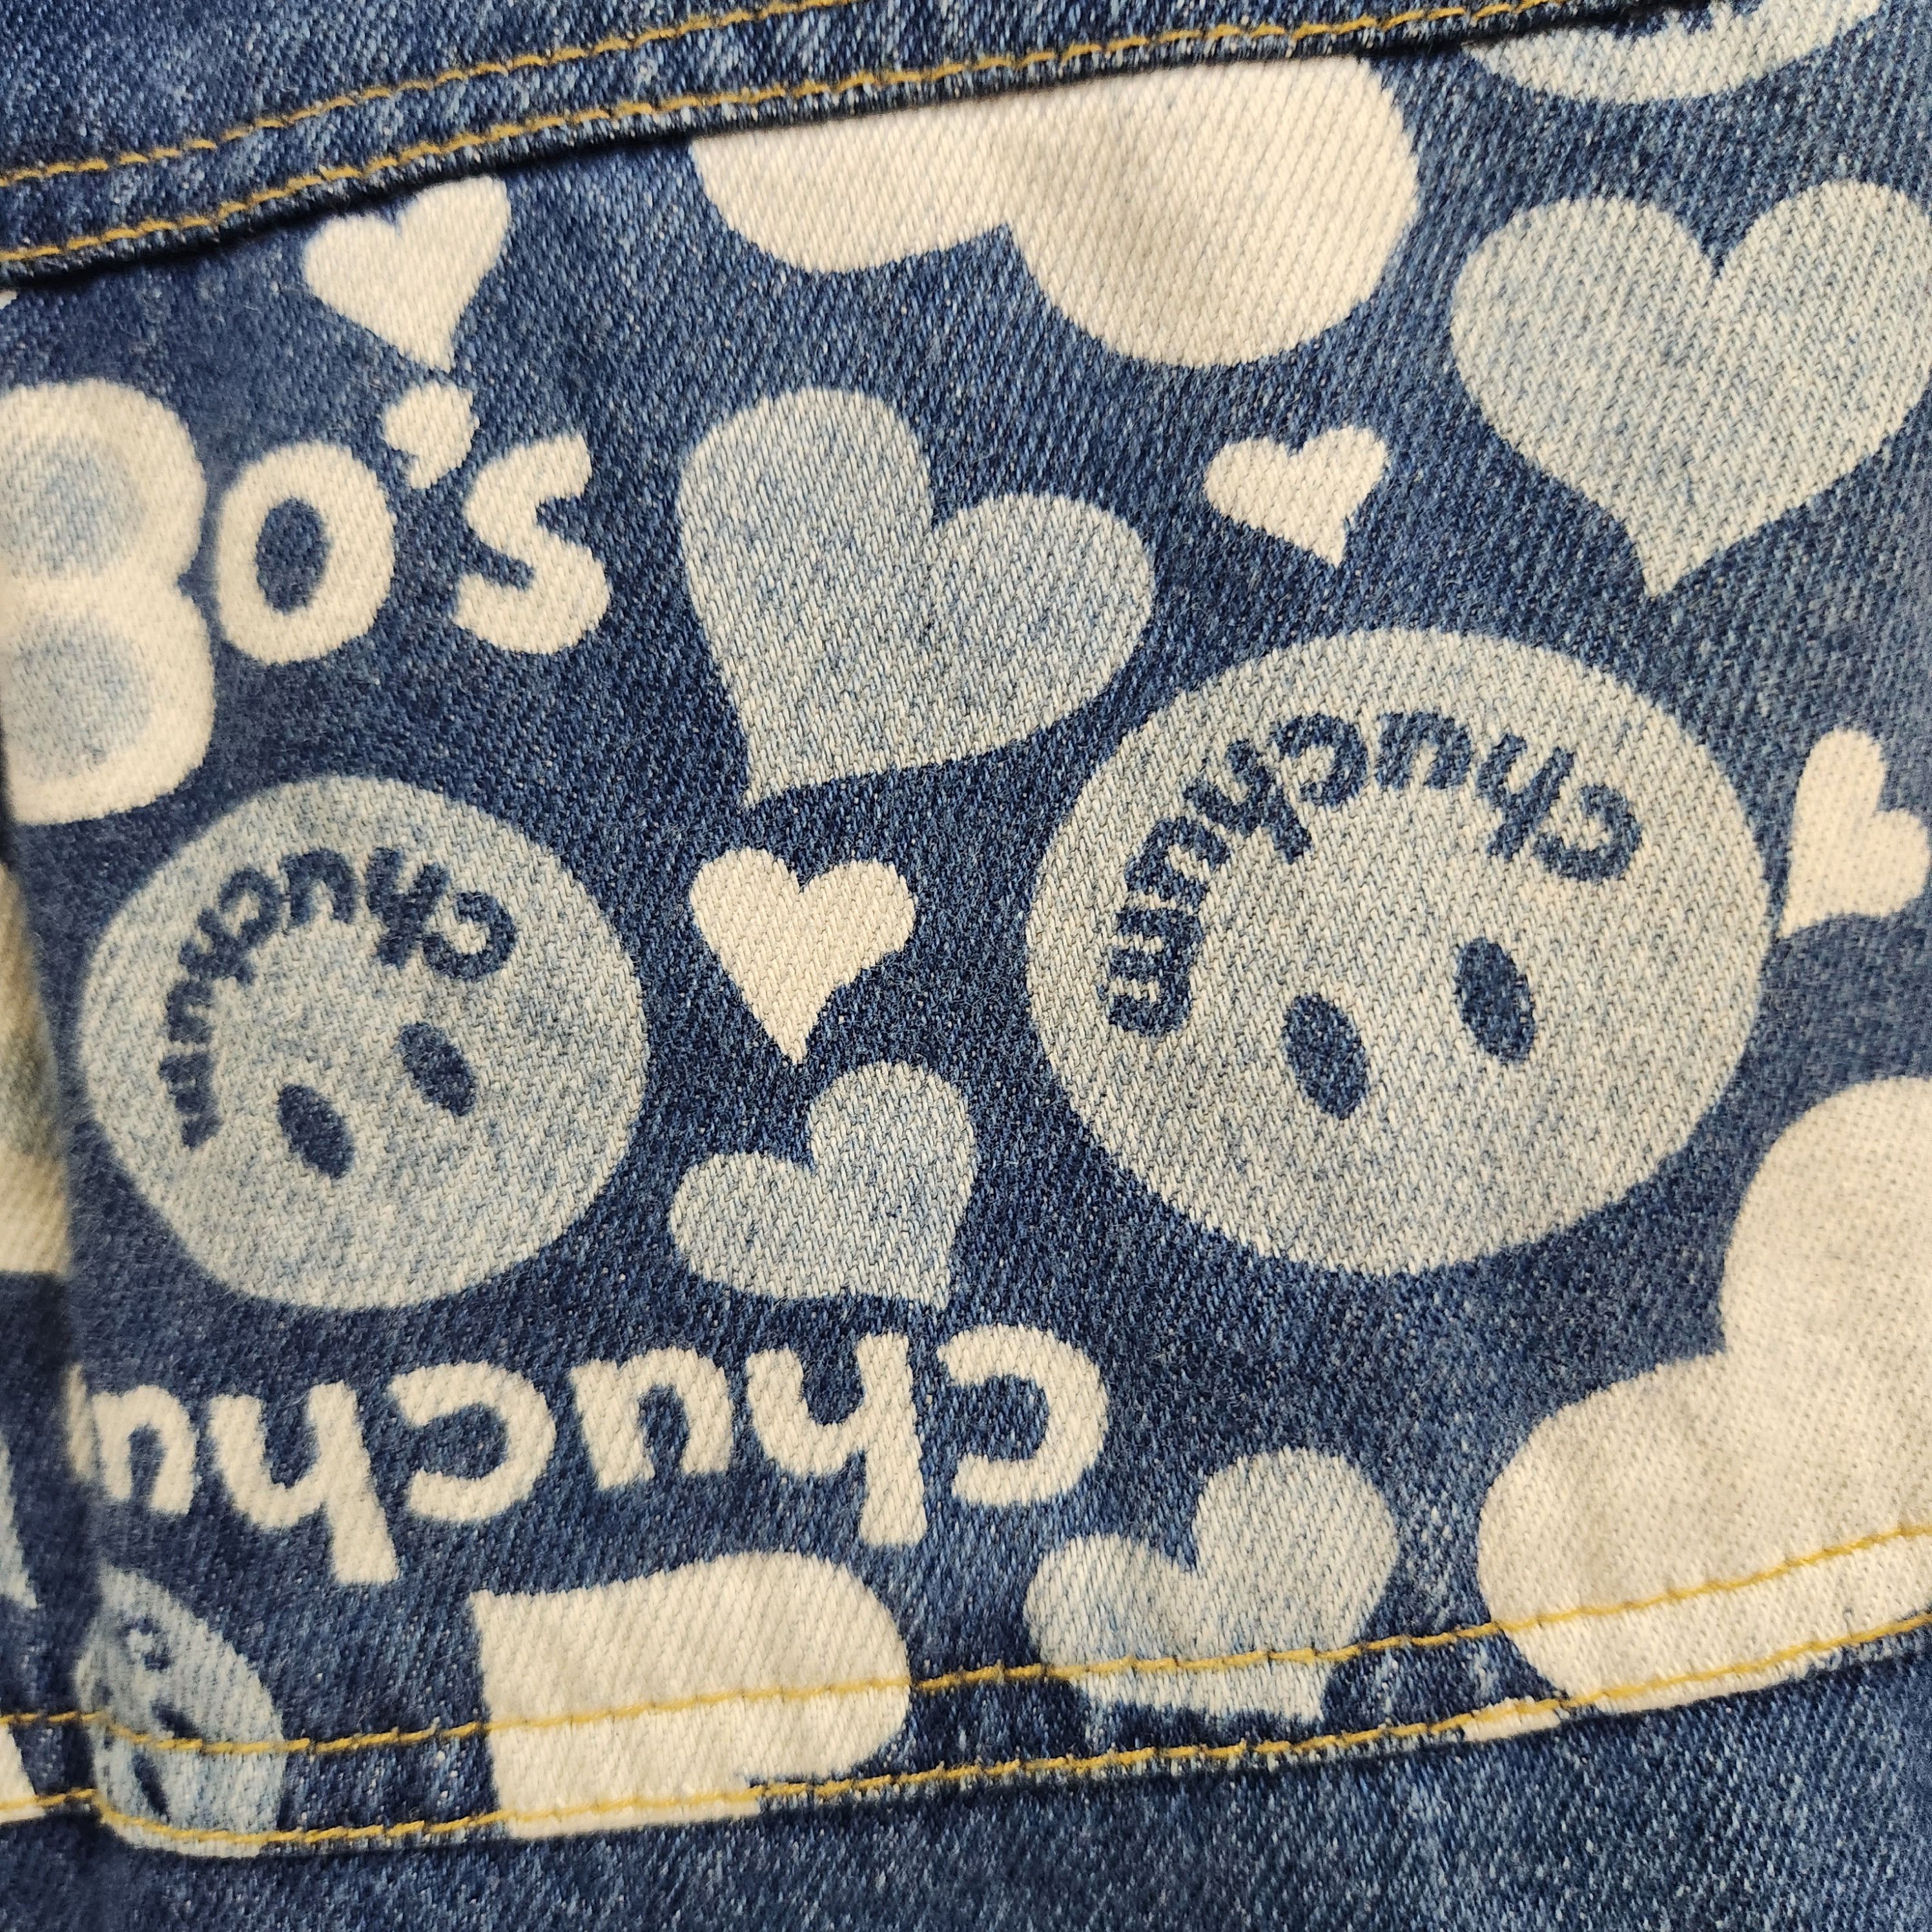 Disco 80s Chuchum Patches Denim Vintage Jeans Japan - 6